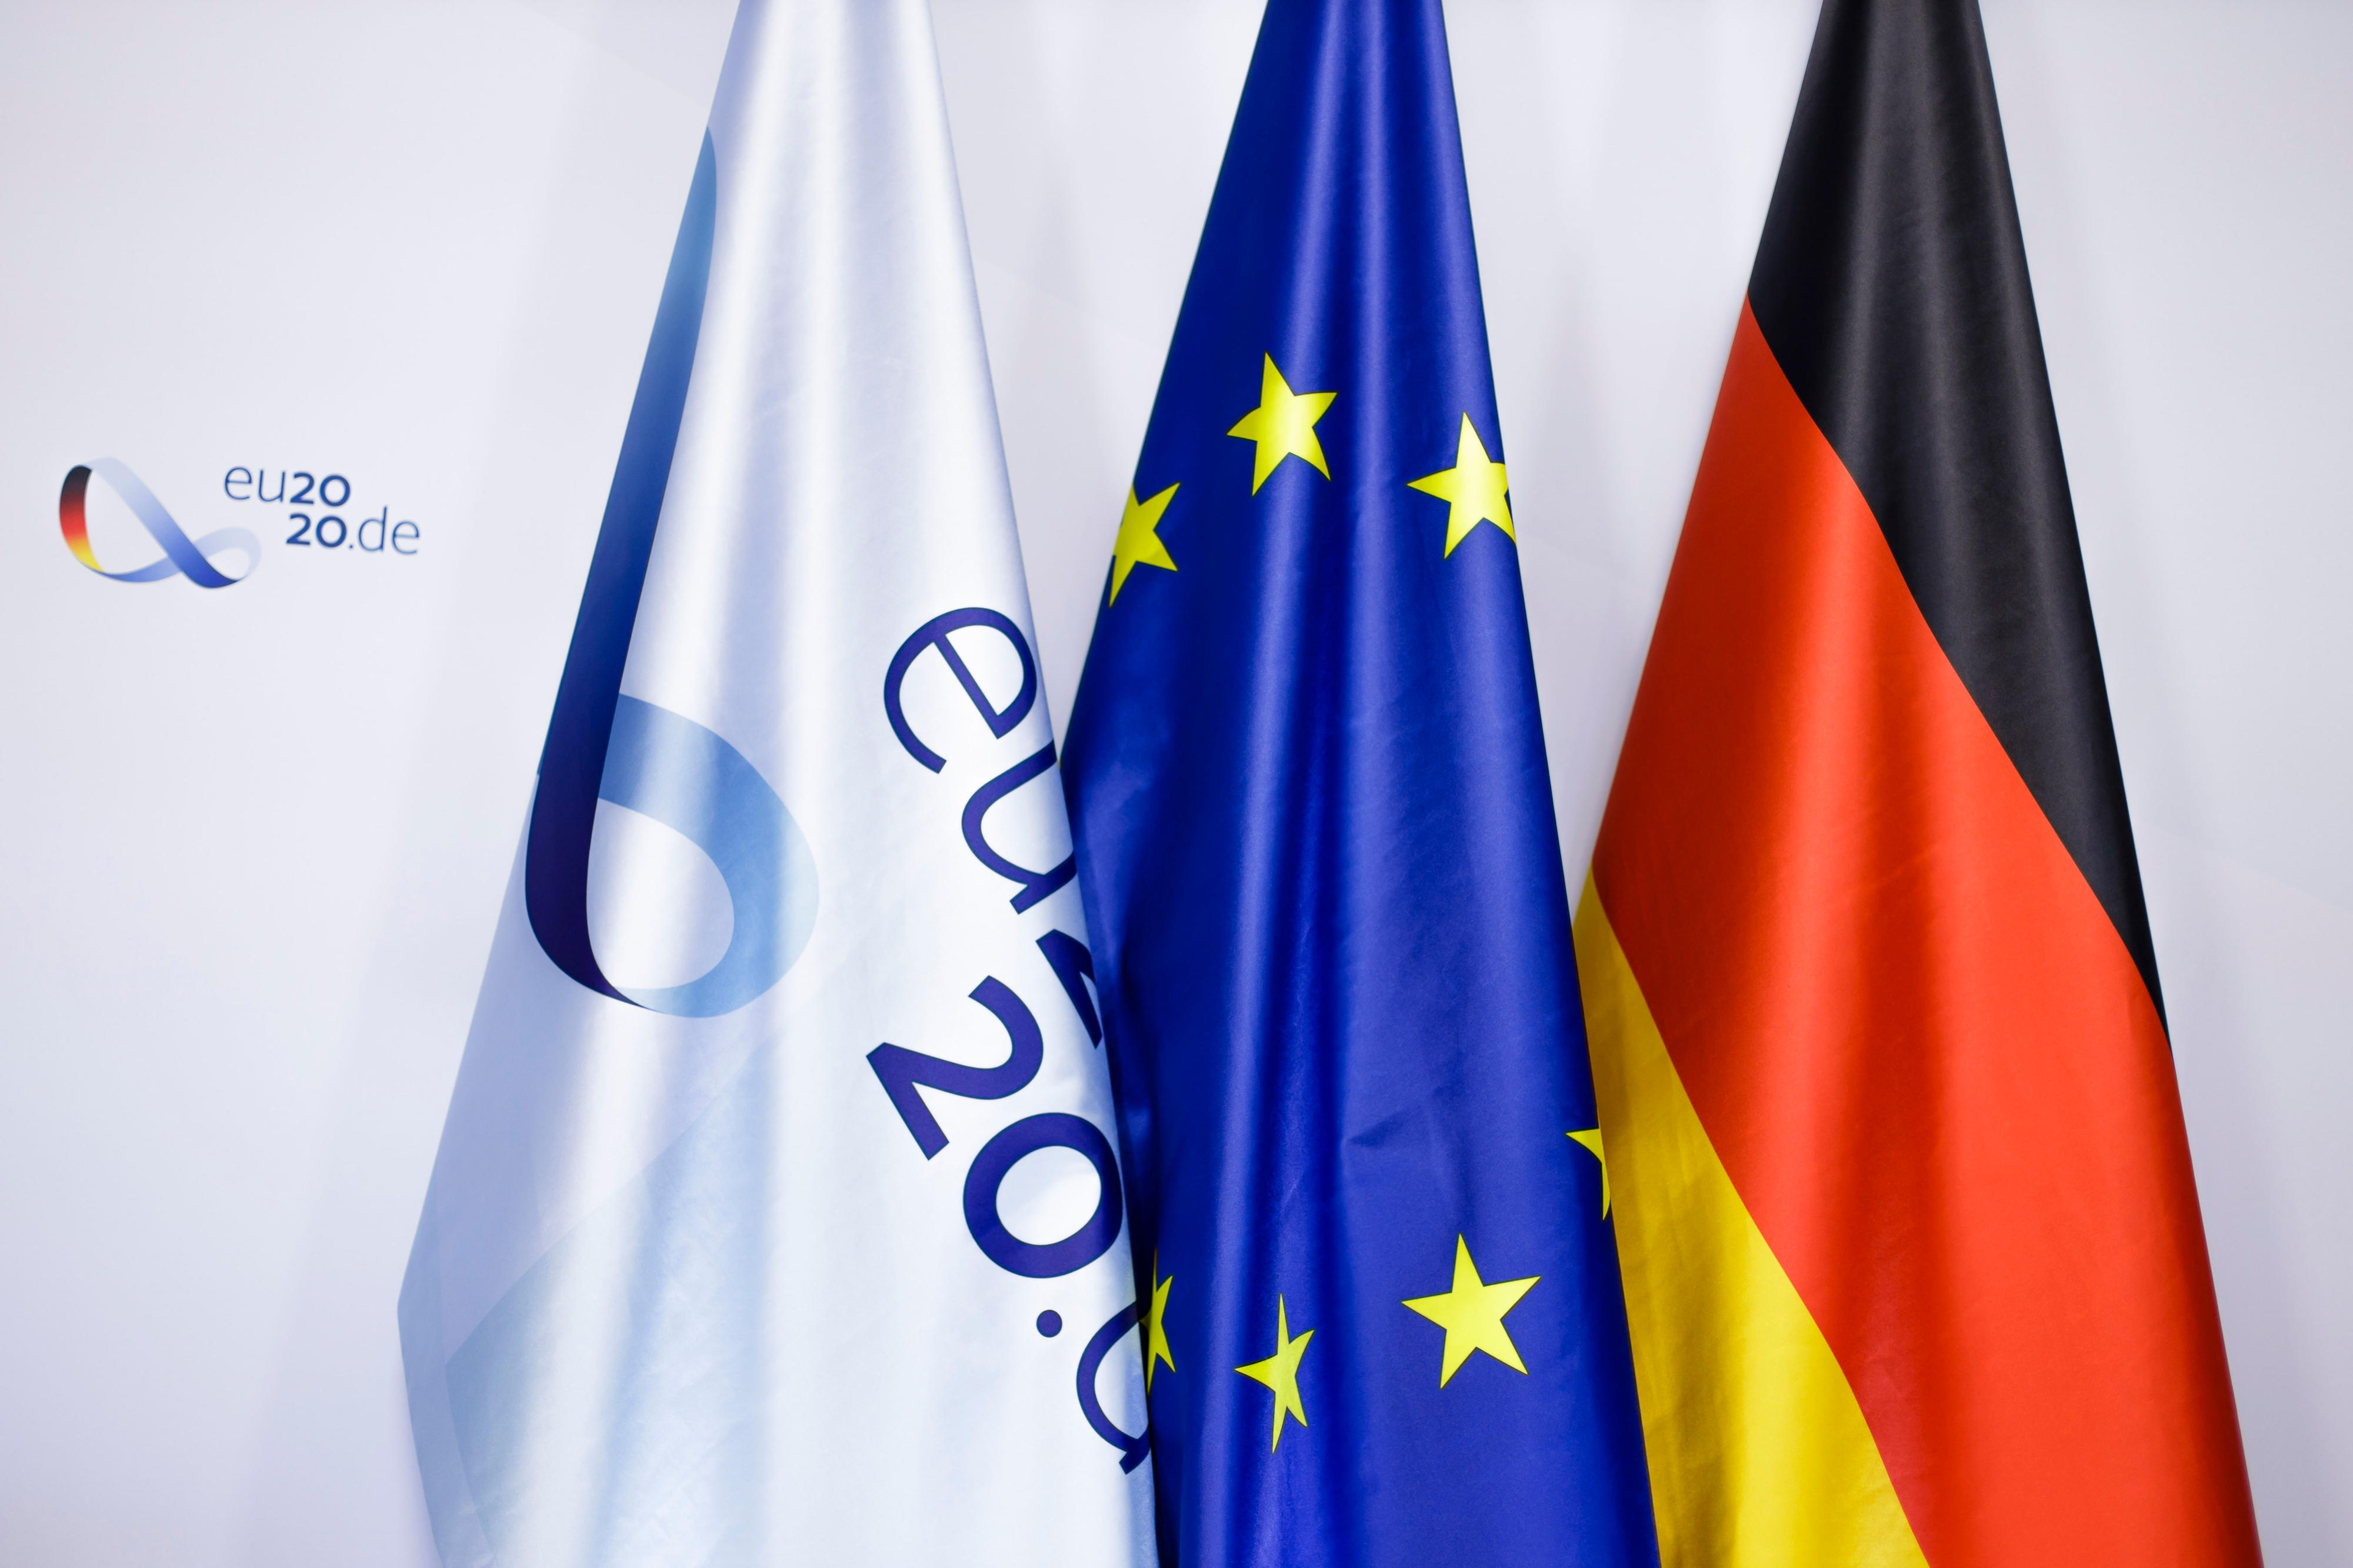 Flag­ge mit dem Lo­go der deut­schen EU-Rats­prä­si­dent­schaft 2020, Eu­ro­pa-Flag­ge und Deutsch­land-Flag­ge